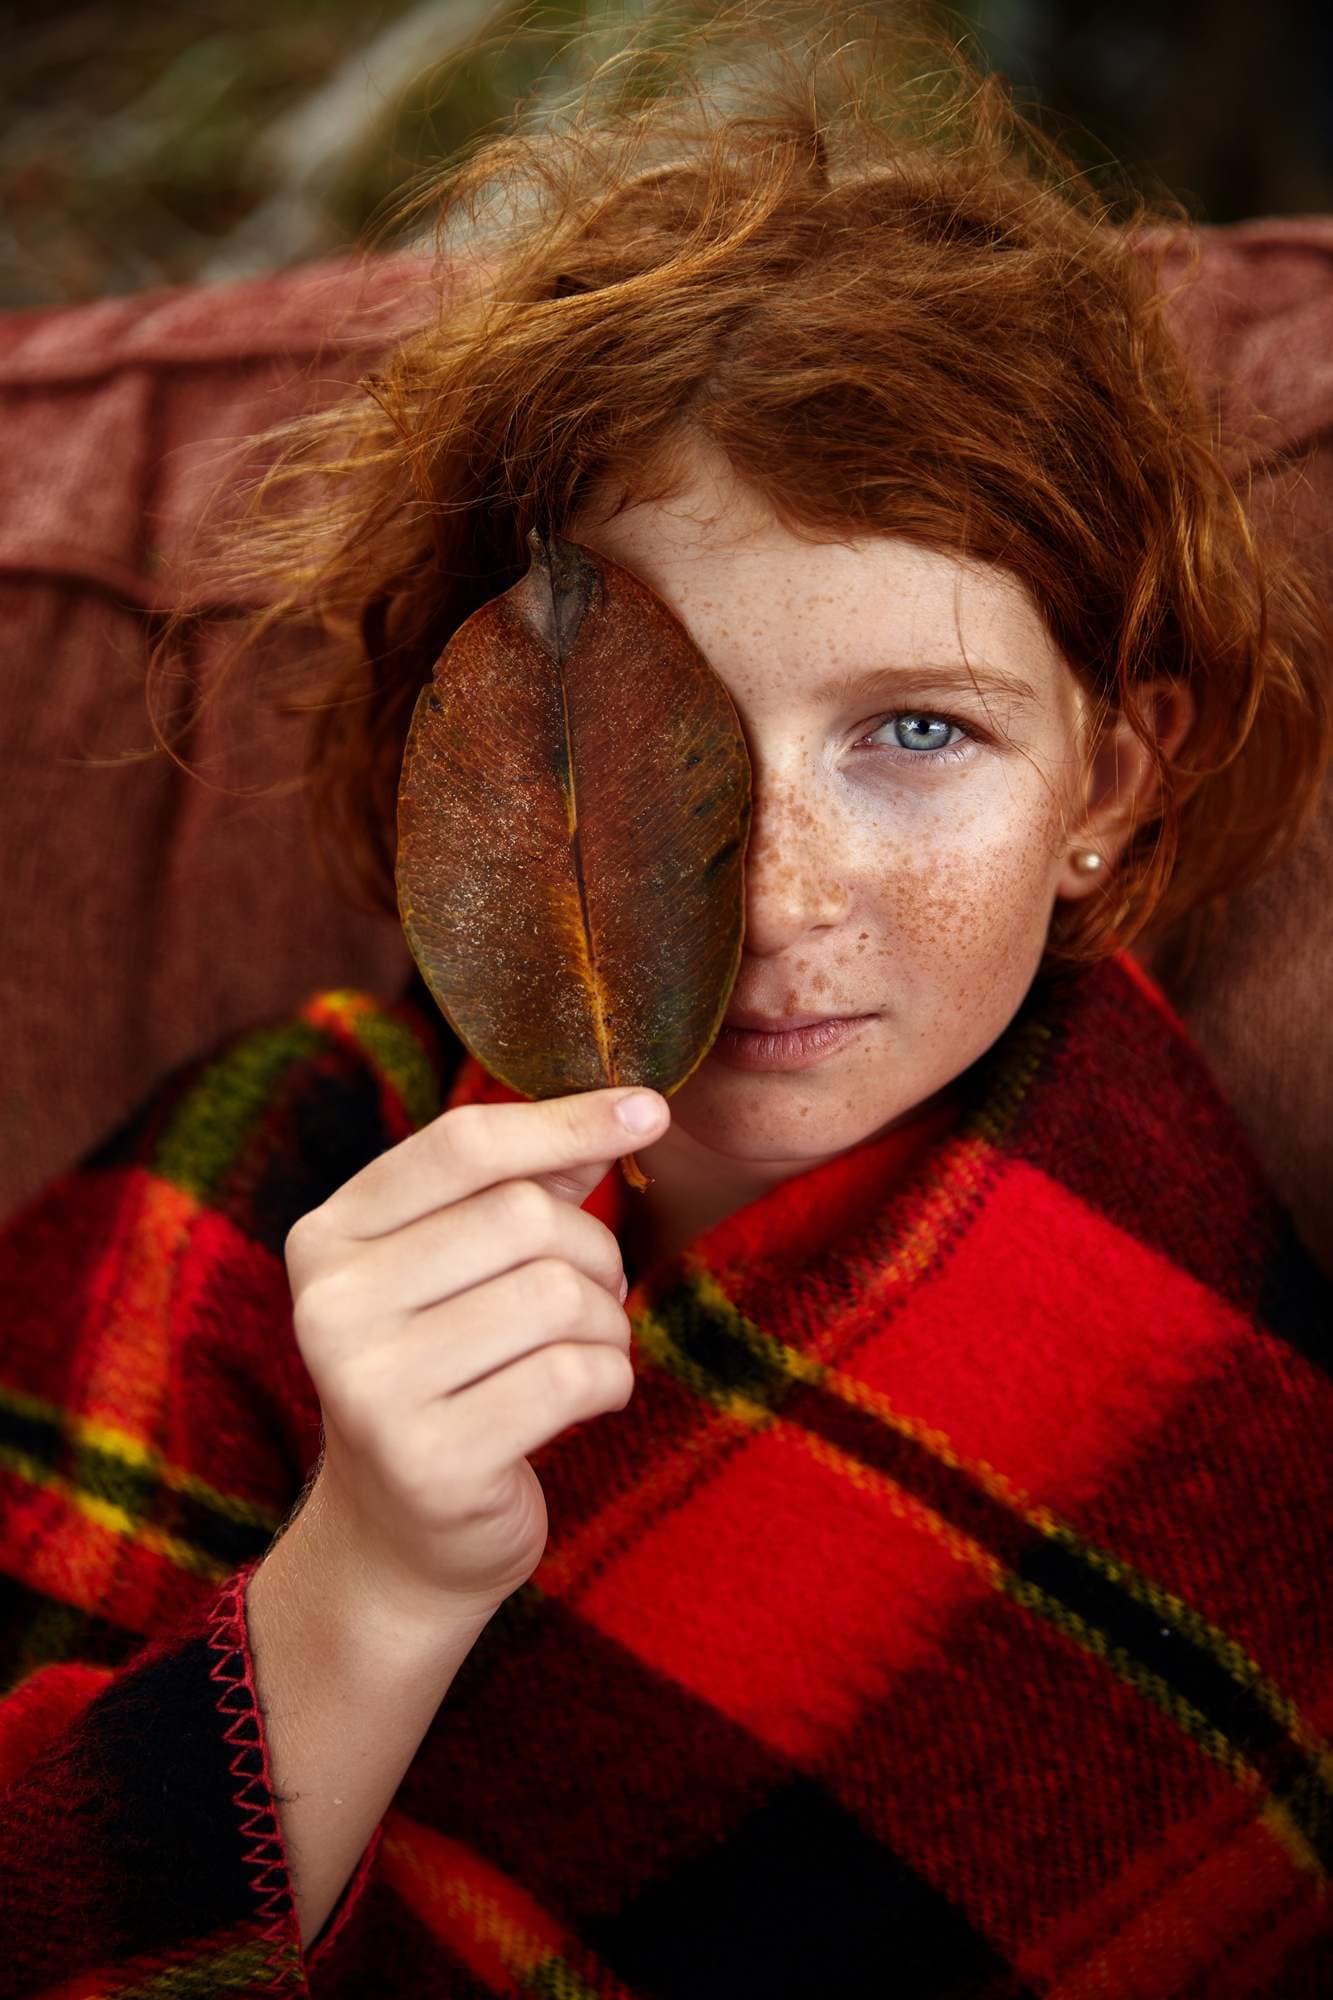 Фотограф Москва, портрет рыжей девочки с веснушками, детская фотосессия